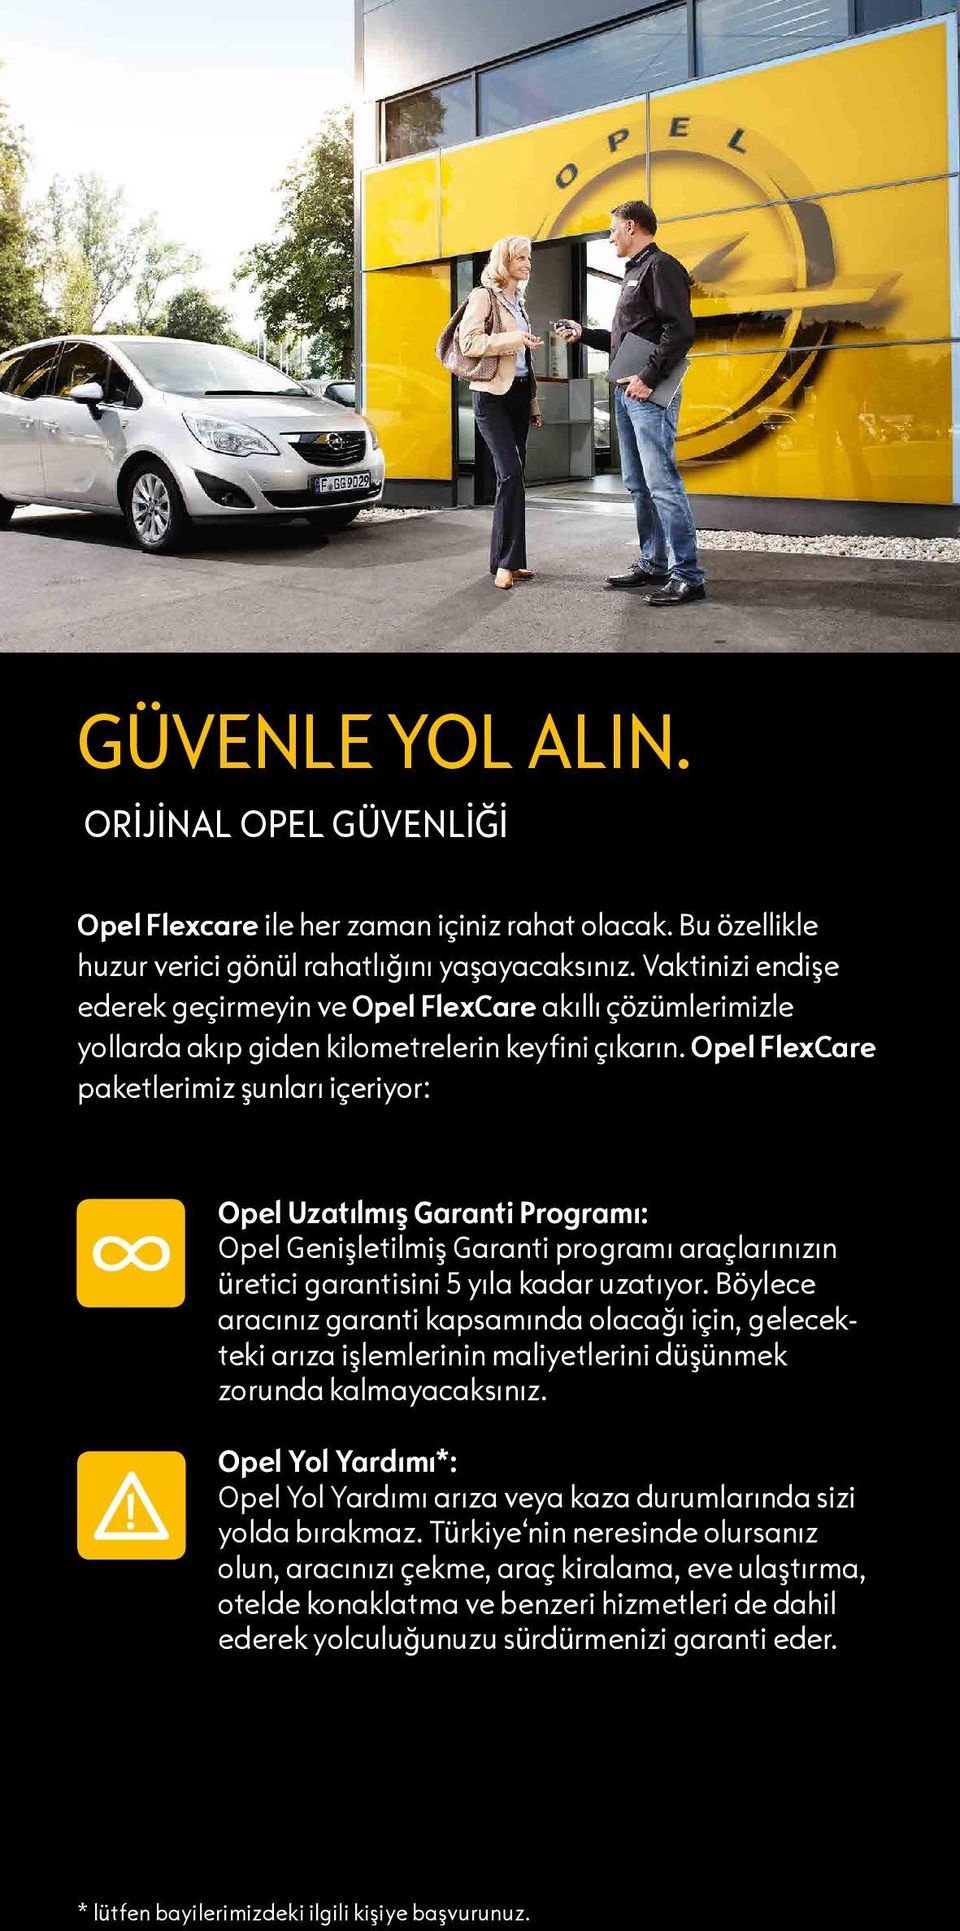 Opel FlexCare paketlerimiz şunları içeriyor: Opel Uzatılmış Garanti Programı: Opel Genişletilmiş Garanti programı araçlarınızın üretici garantisini 5 yıla kadar uzatıyor.